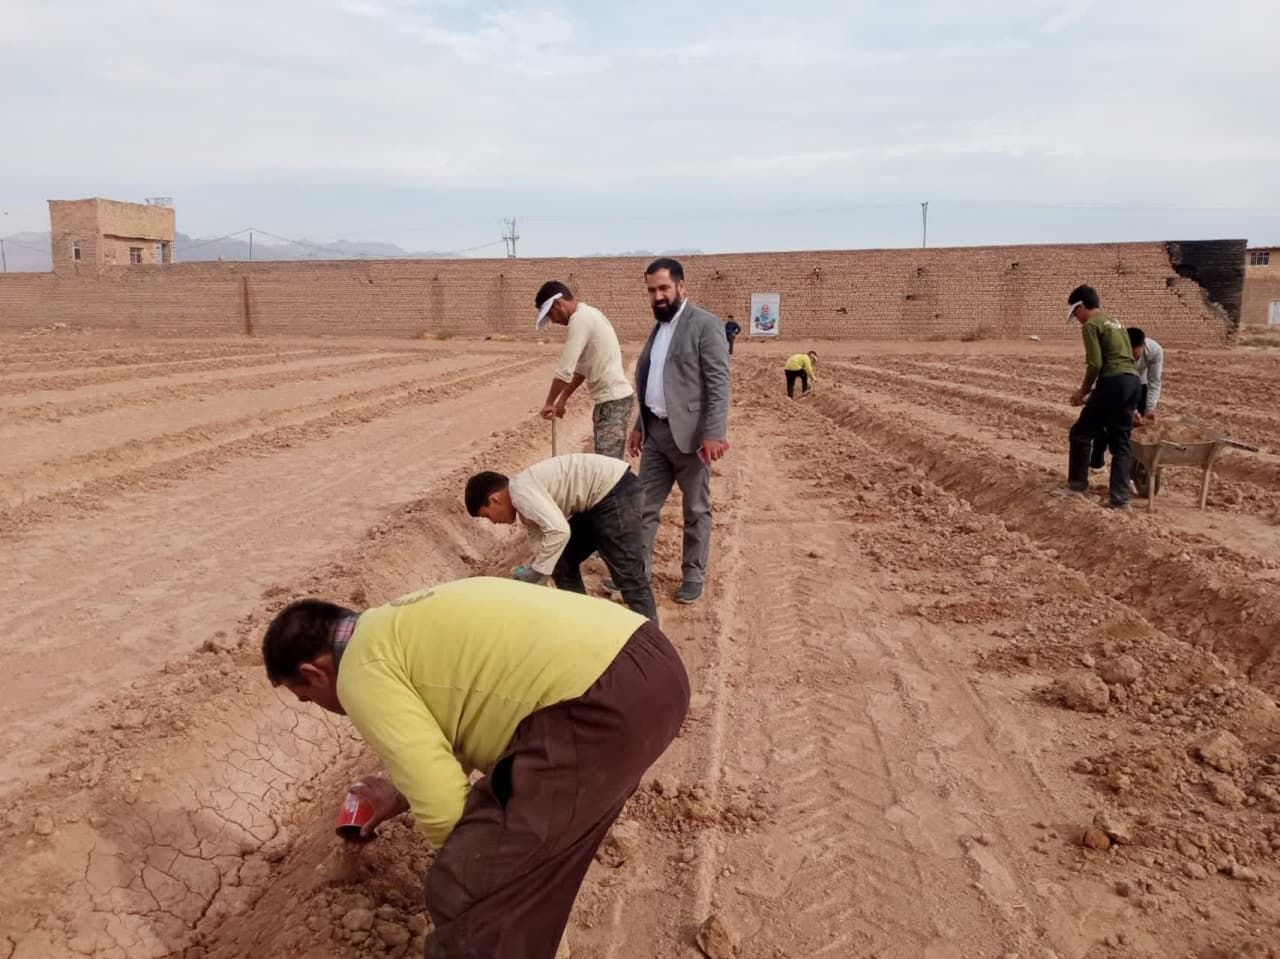 با توزیع بیش از ۱۰ هزار نشاء آنغوزه:اولین مزرعه الگویی زراعی گیاه آنغوزه در شهرستان کاشمر کشت شد